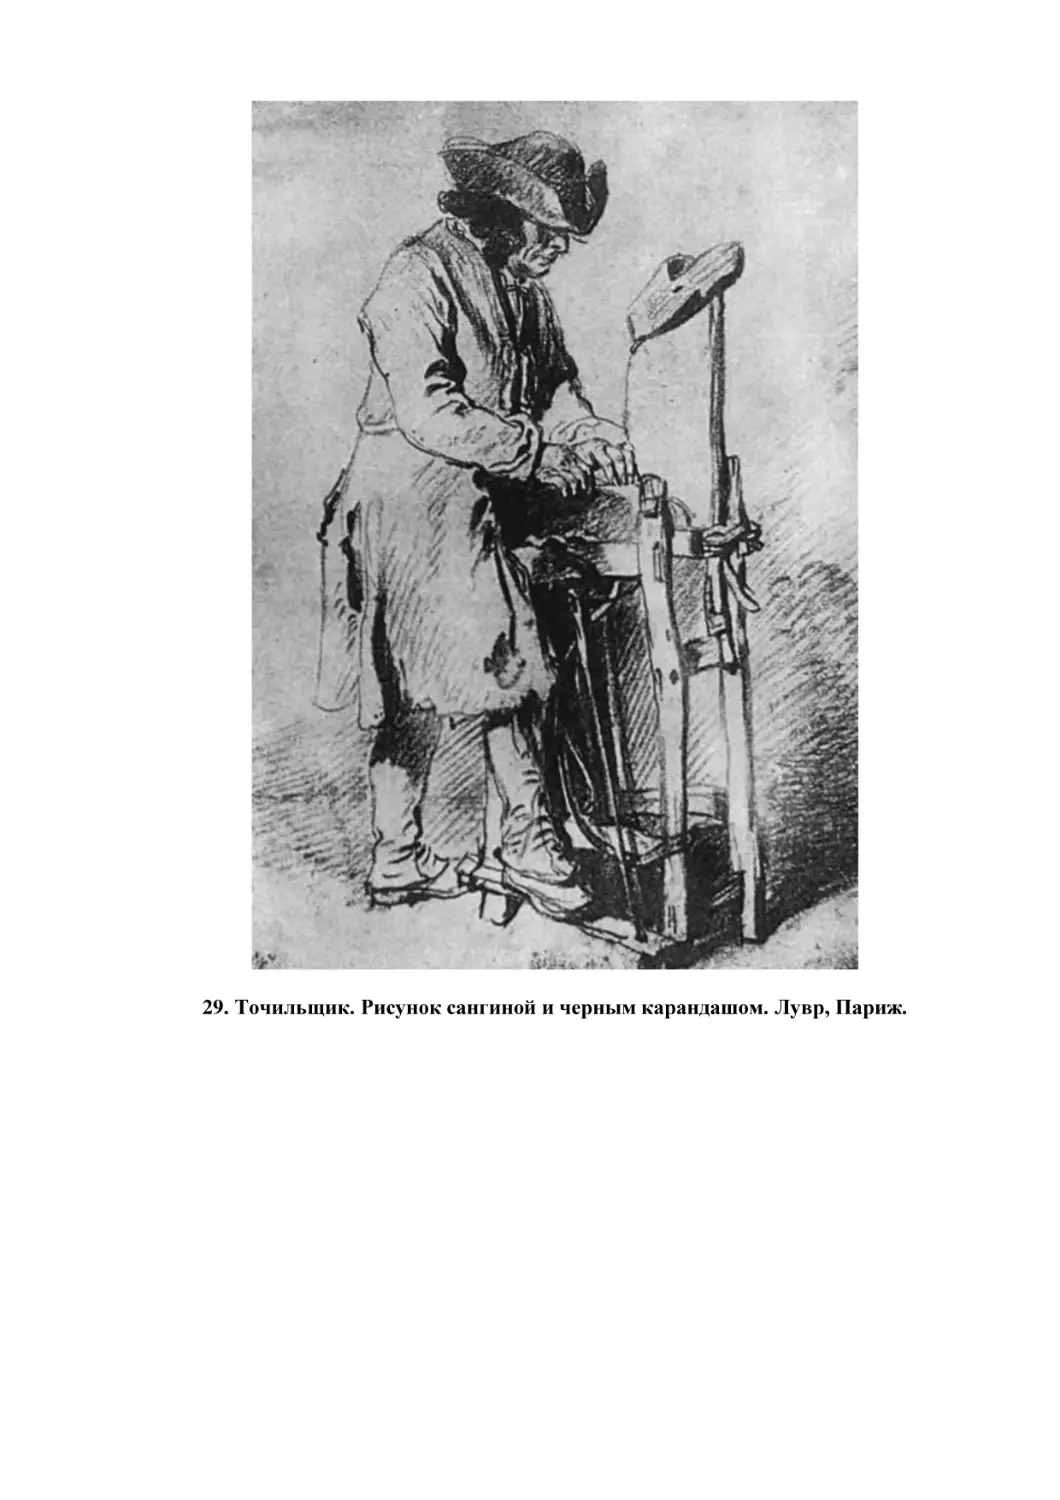 29. Точильщик. Рисунок сангиной и черным карандашом. Лувр, Париж.